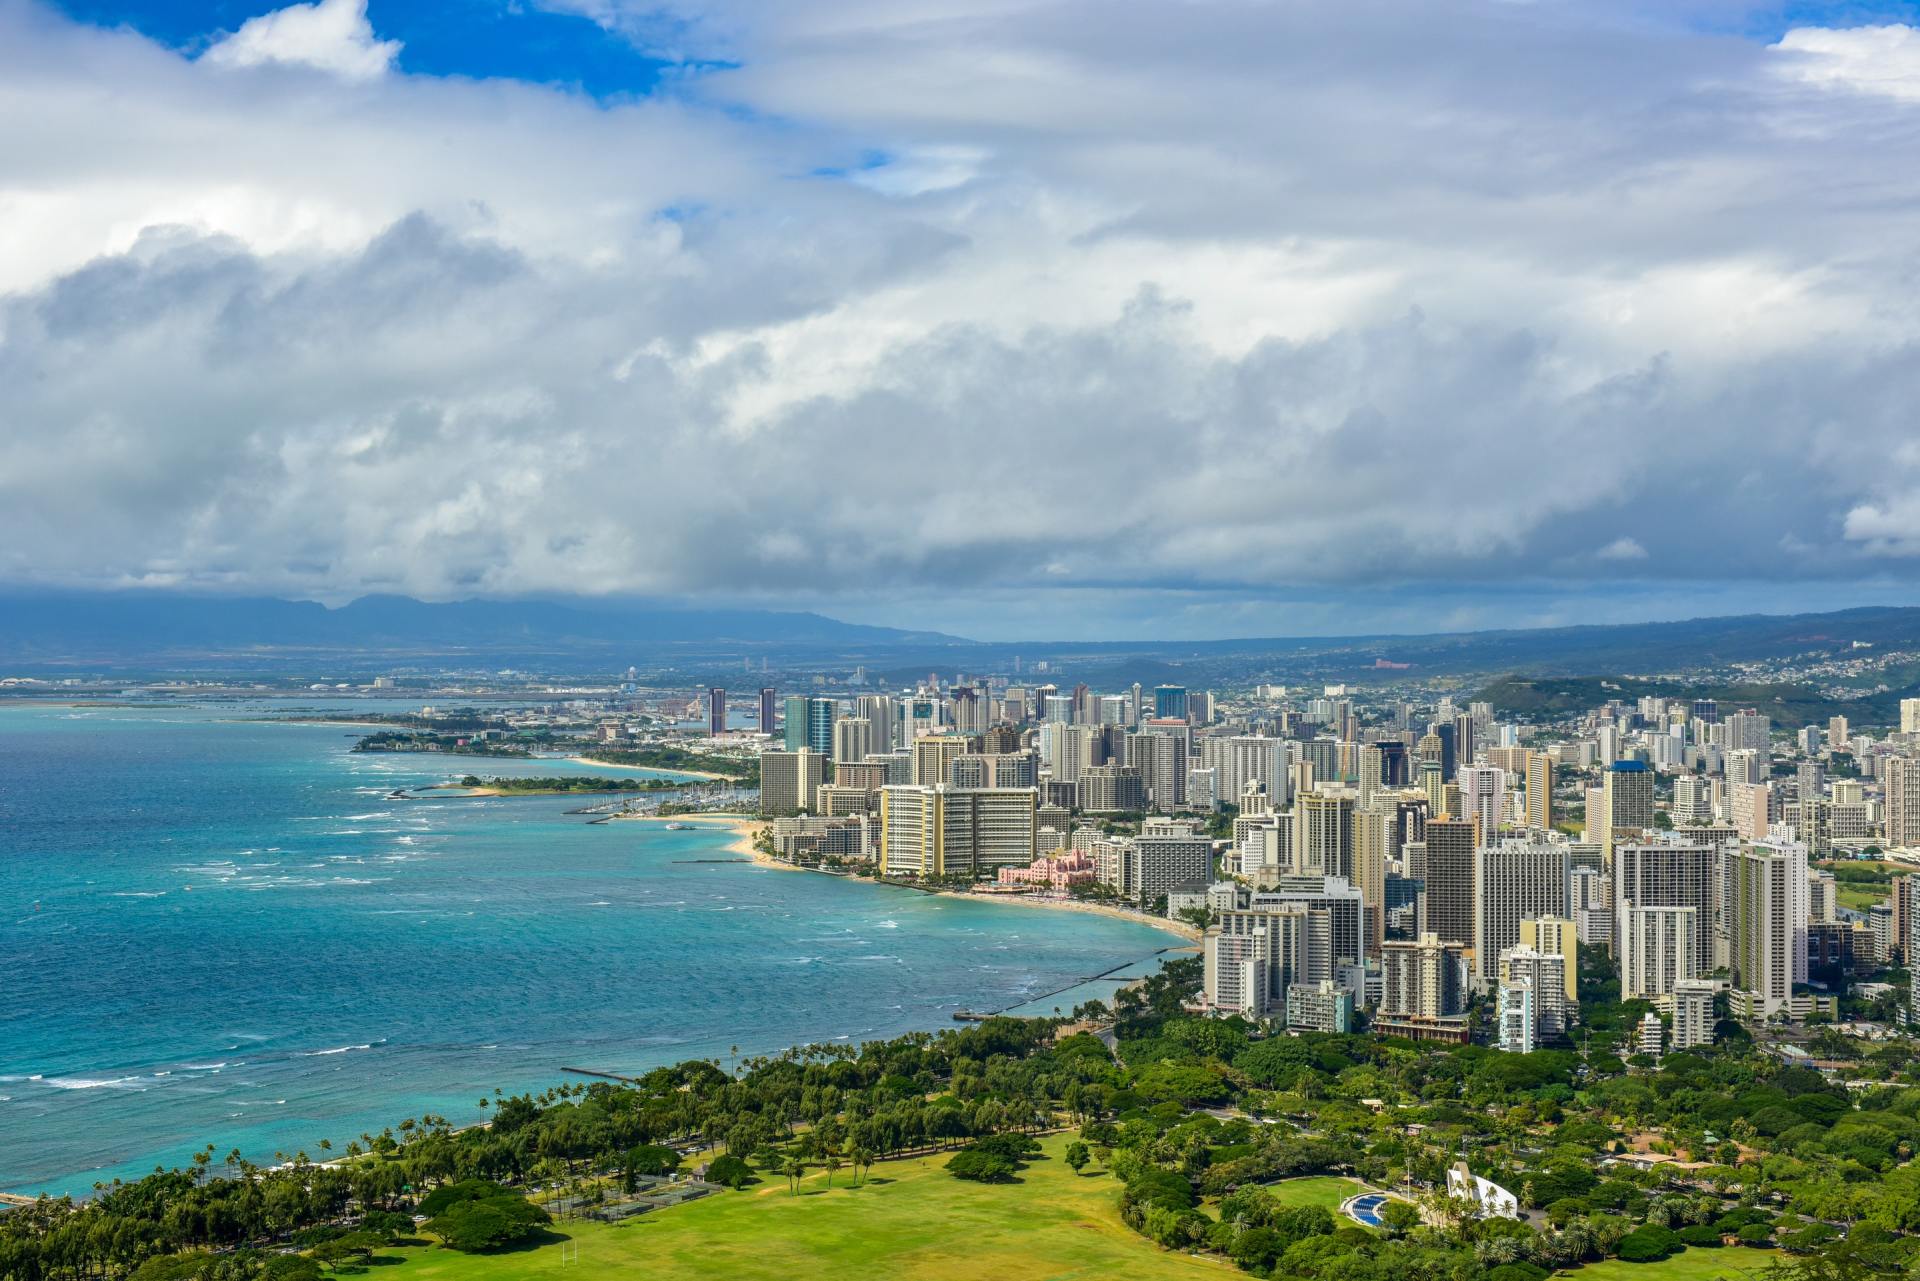 Vacation to Honolulu Waikiki Hawaii Oahu